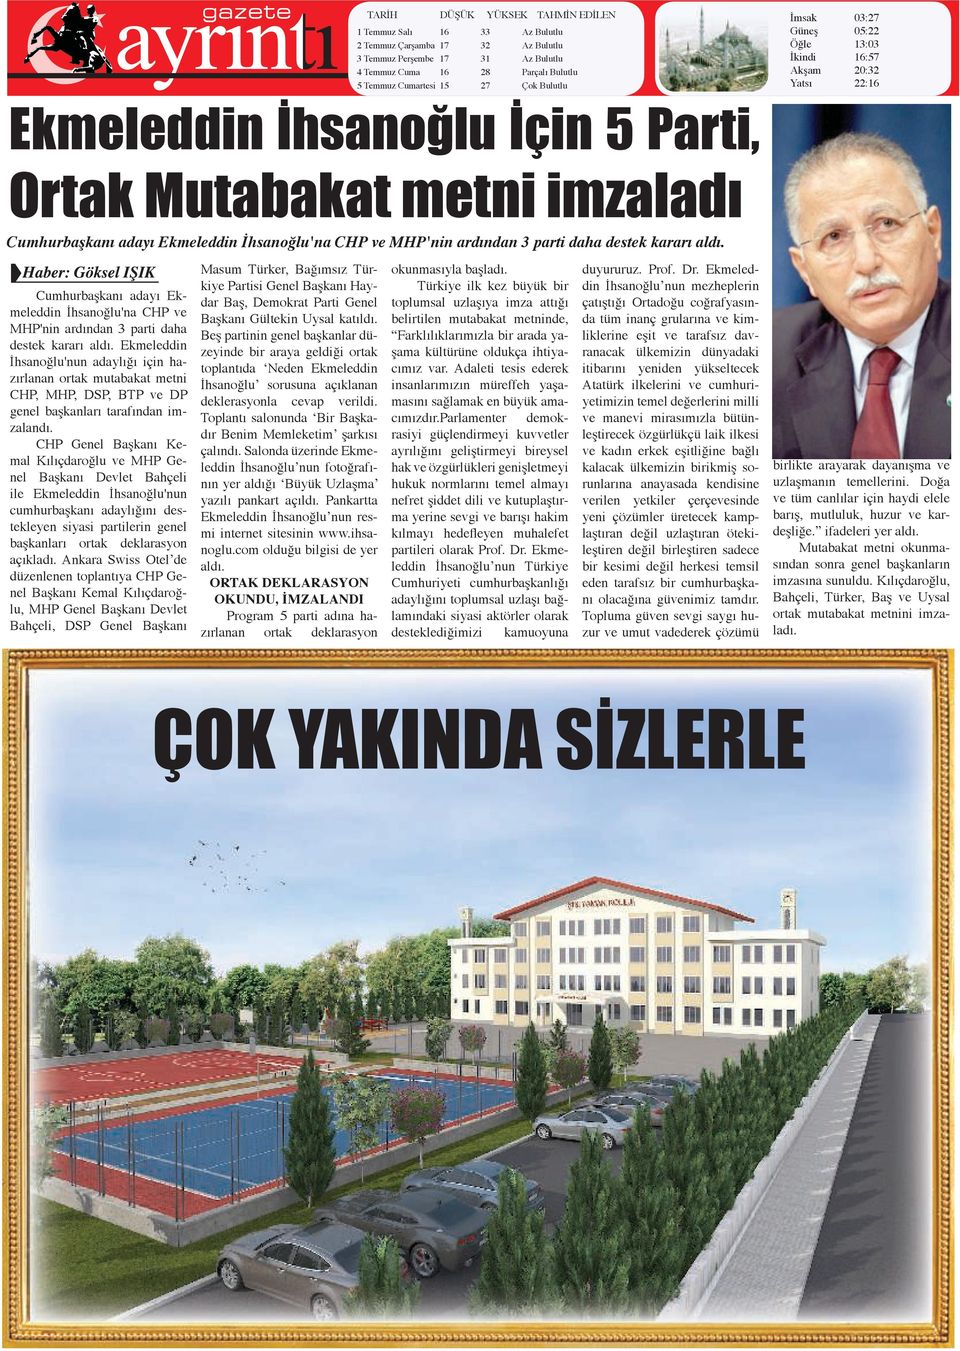 MHP'nin ardından 3 parti daha destek kararı aldı. Cumhurbaşkanı adayı Ekmeleddin İhsanoğlu'na CHP ve MHP'nin ardından 3 parti daha destek kararı aldı.